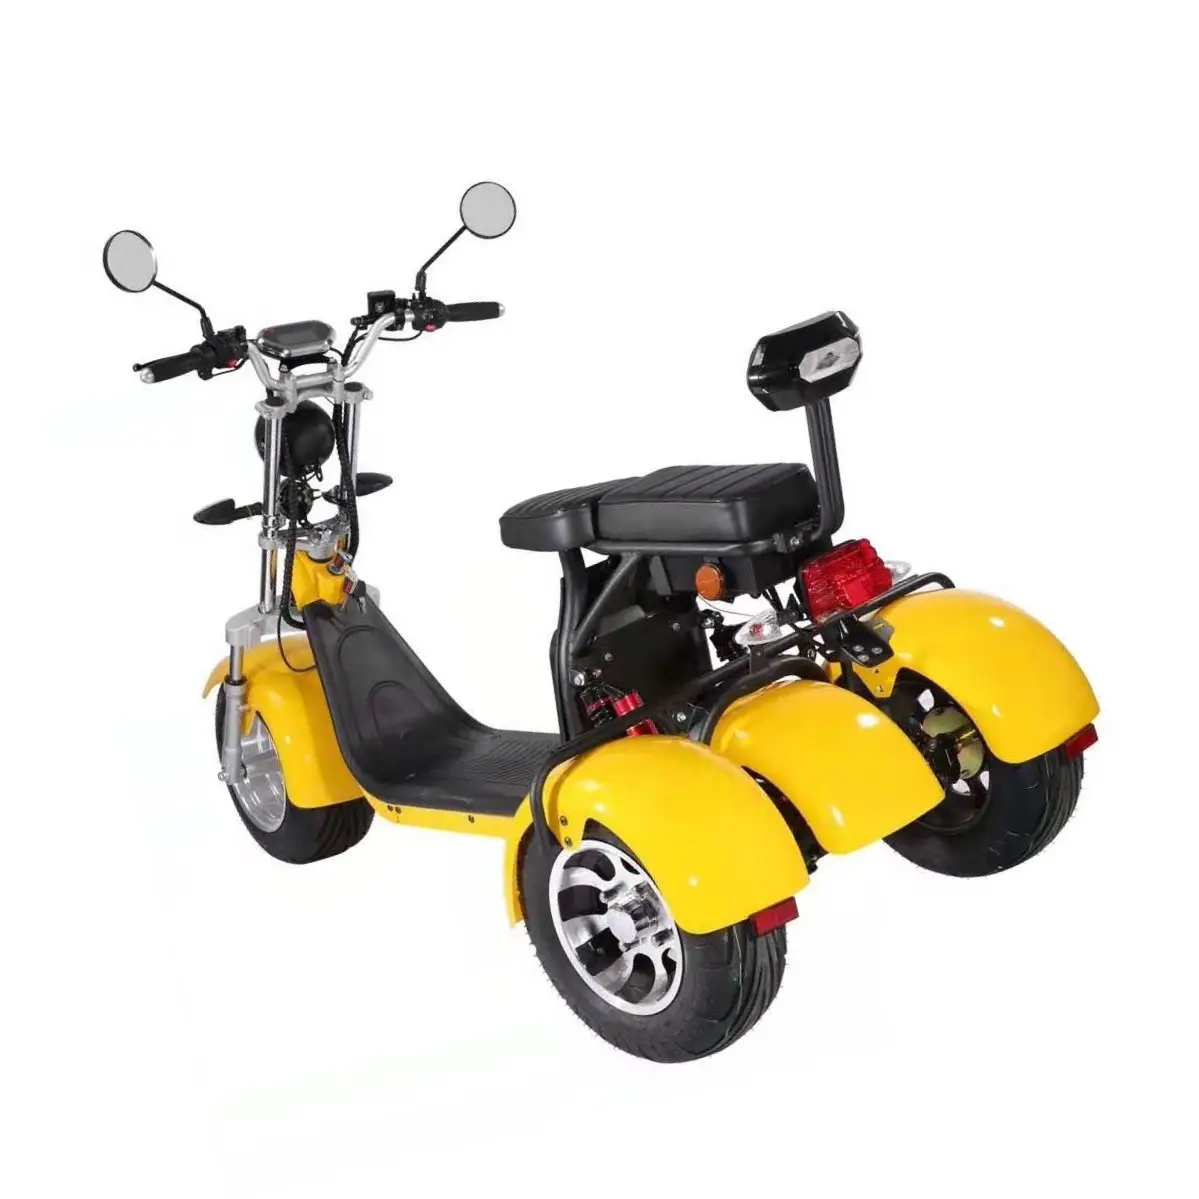 Scooter elétrico adulto de alta qualidade, eec/coc certifica a segurança de três rodas